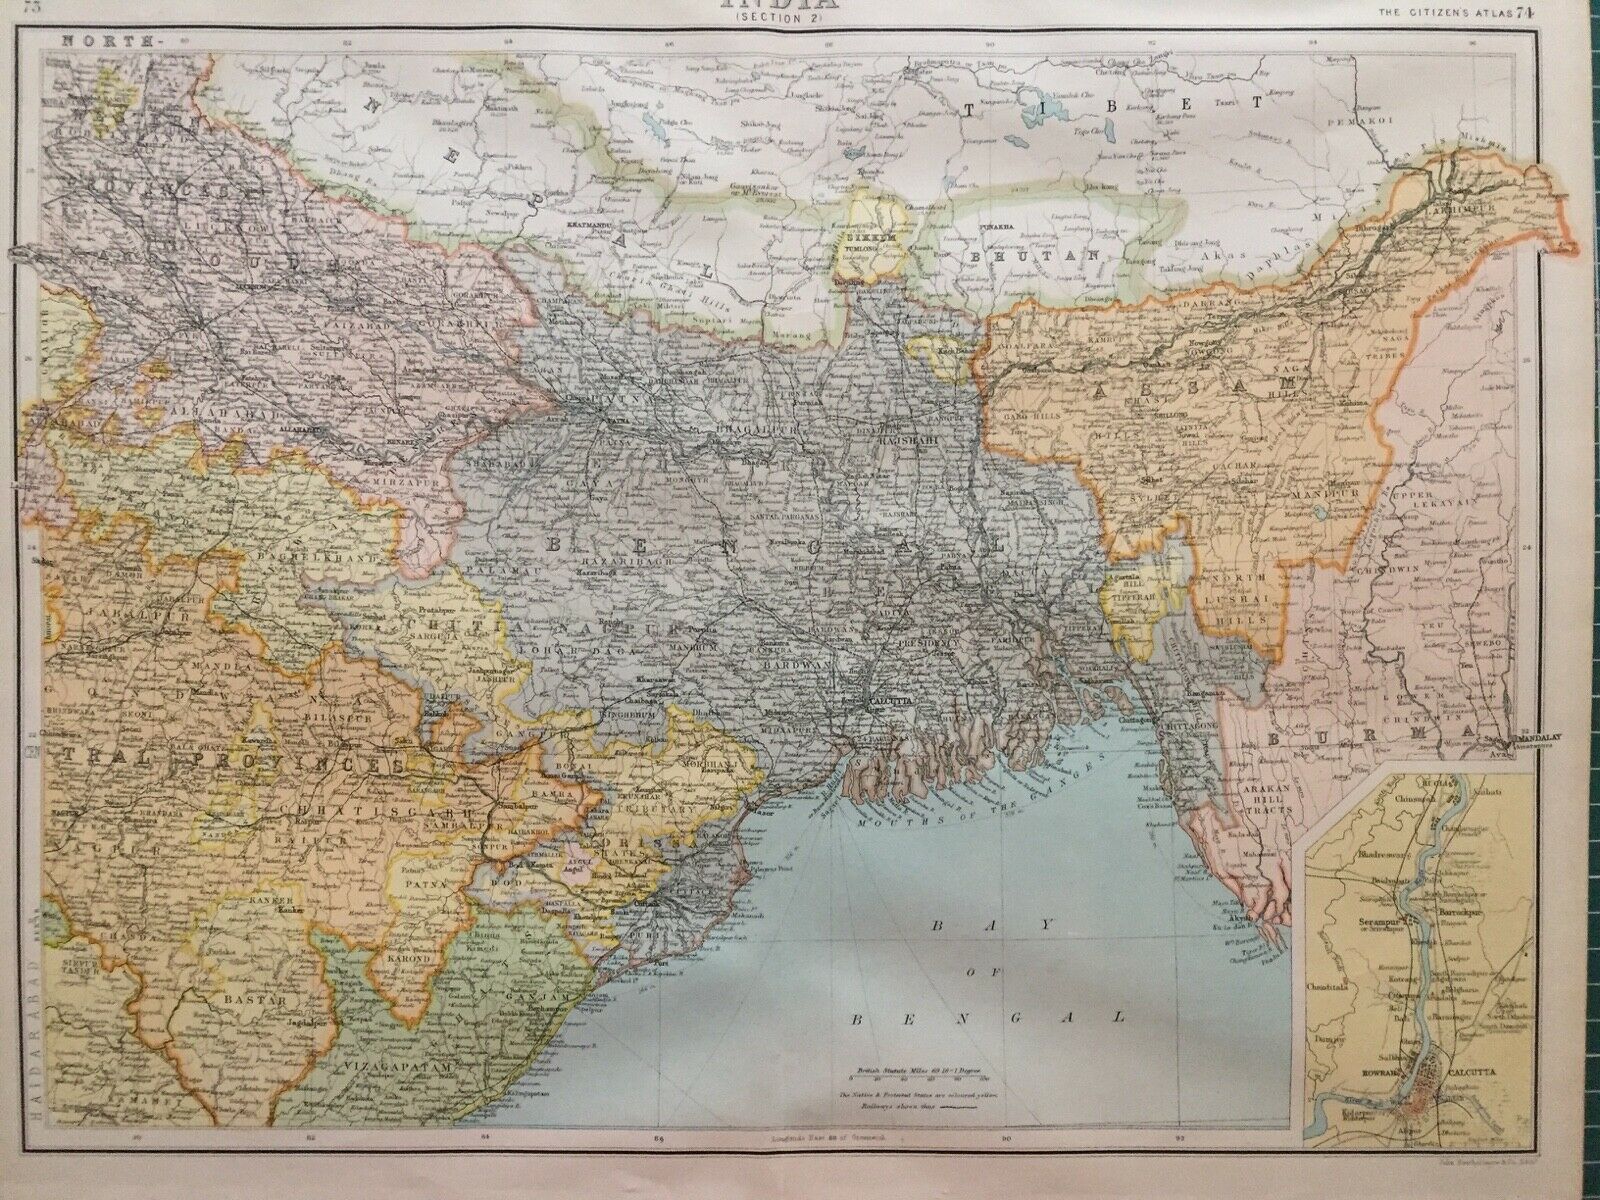 မြန်မာပြည်နှင့် ဆစ်ကင်နယ်တို့ကို ပြသထားသည့် ၁၉၀၀ ပြည့်နှစ်ဝန်းကျင်က မြေပုံ။